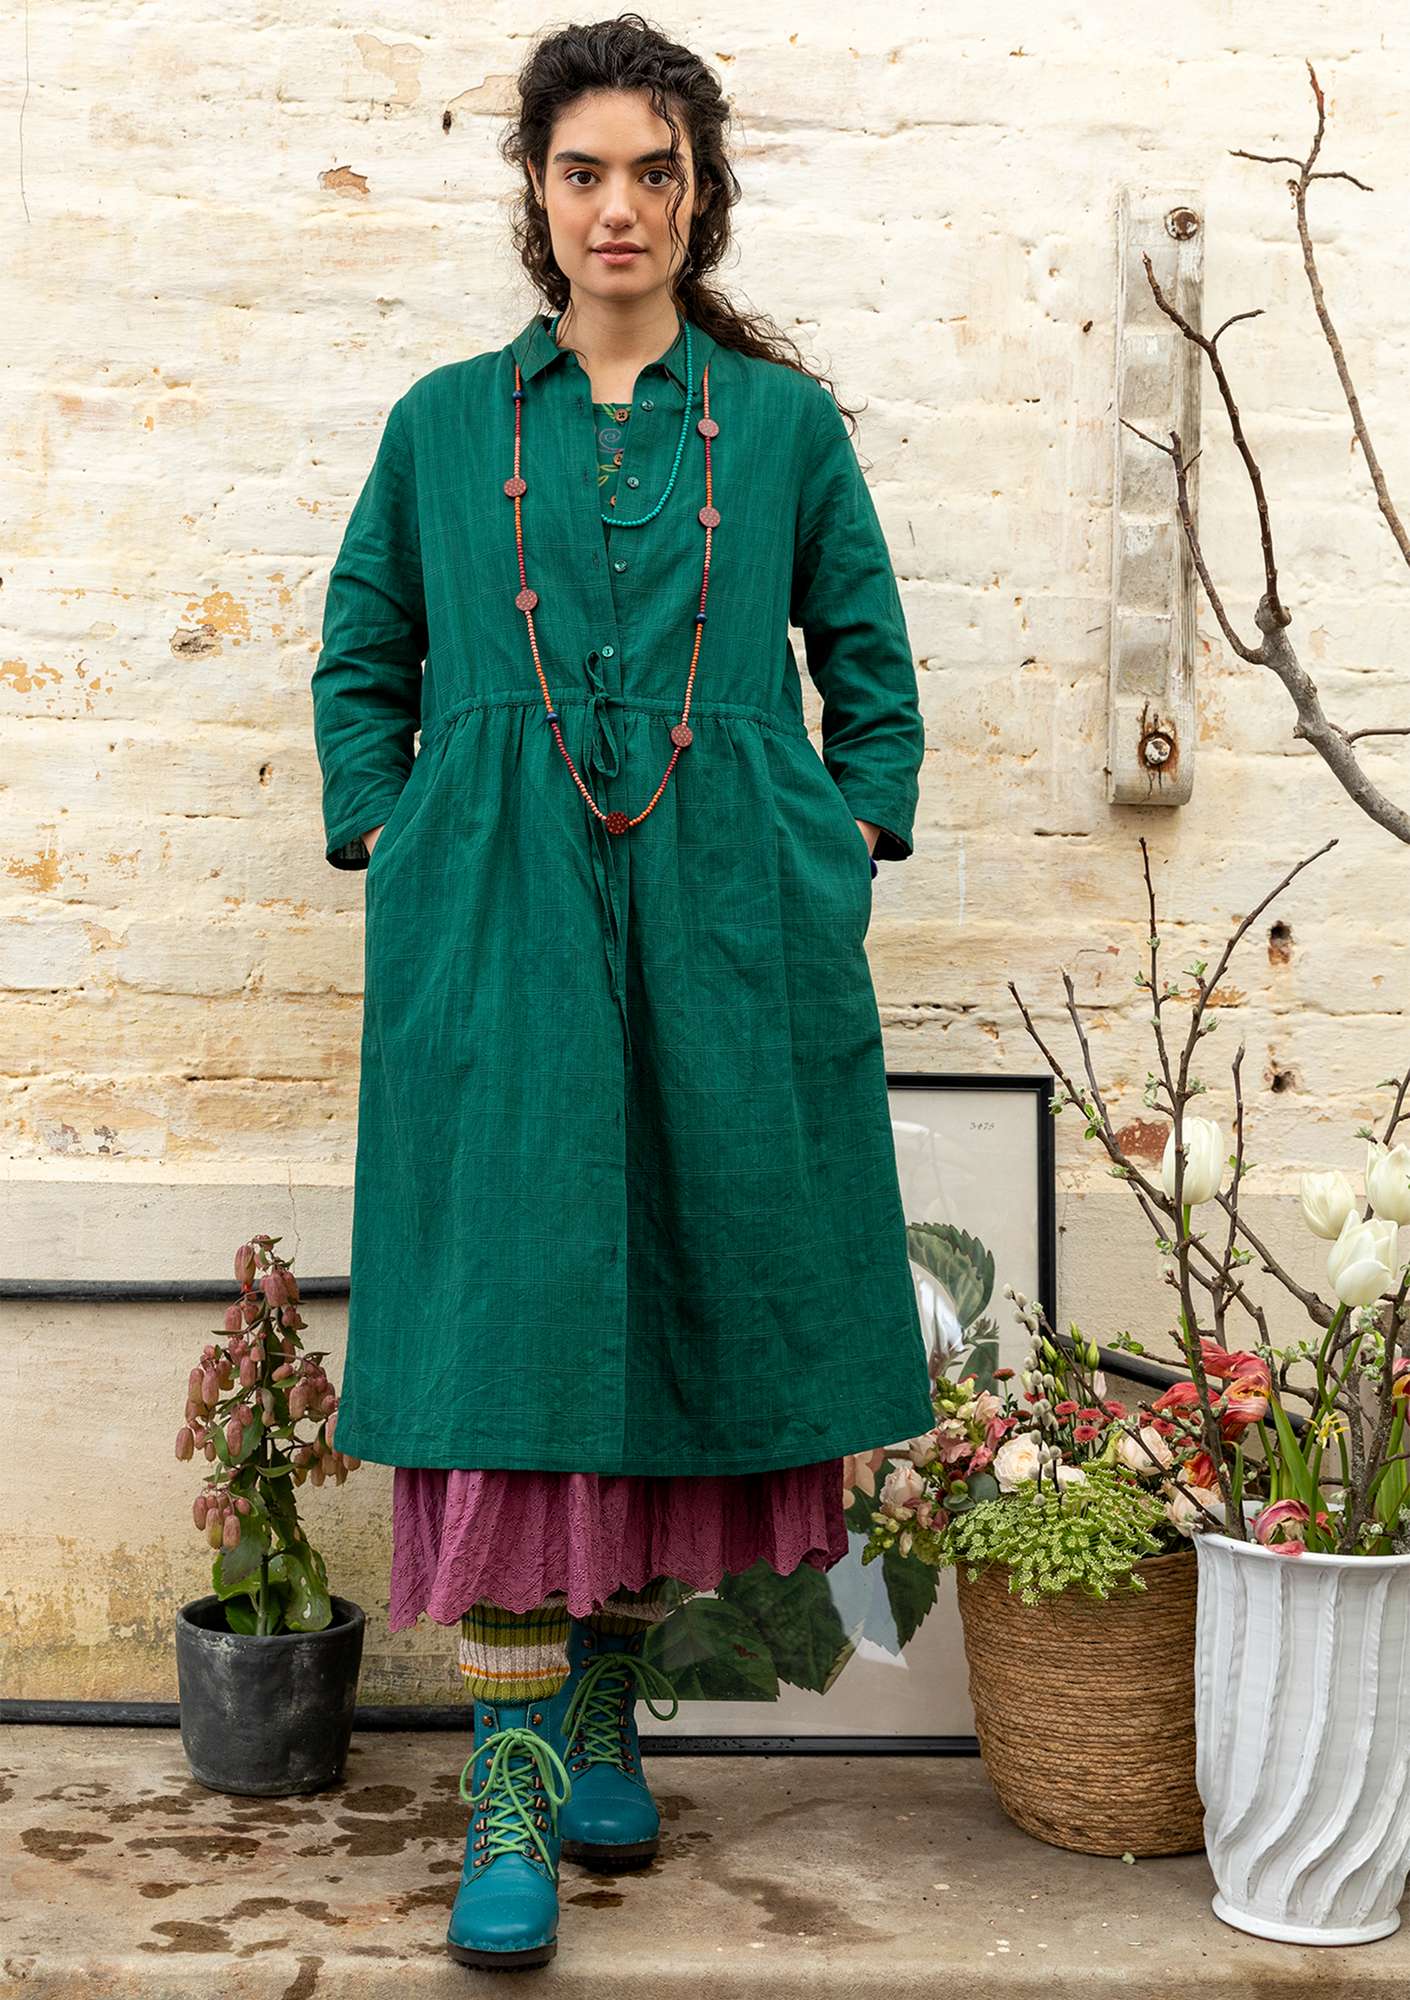 Vevd kjole i økologisk bomull / lin flaskegrønn thumbnail